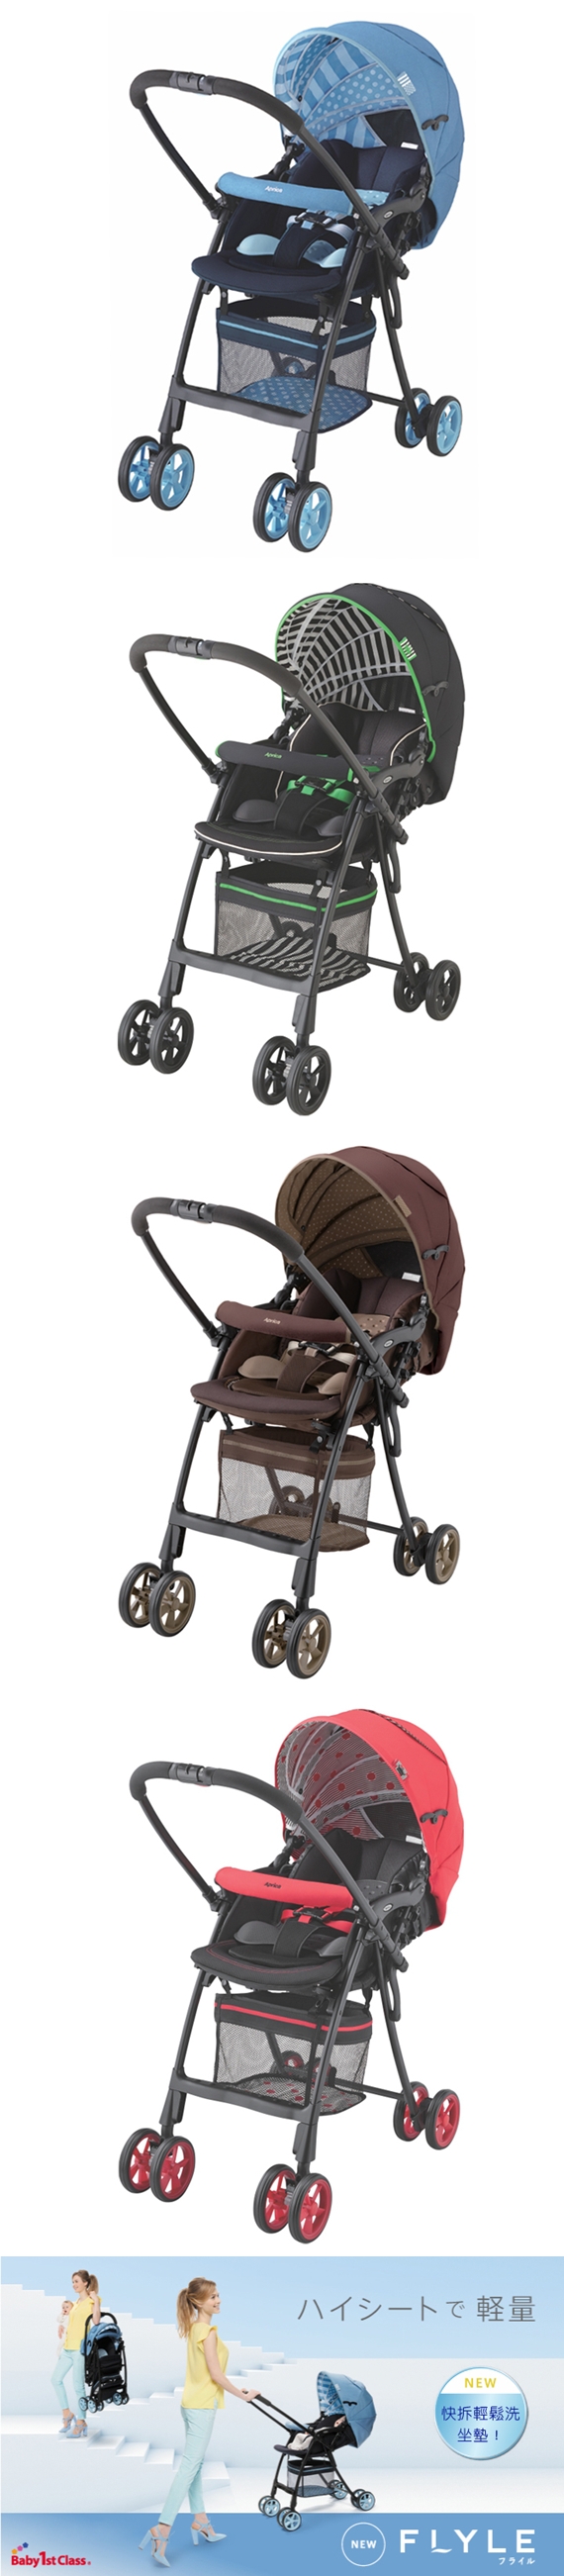 愛普力卡Aprica-挑高型座椅最輕量型嬰幼兒手推車-FLYLE飛舞系列(微風藍/草原綠/褐花/櫻花紅)